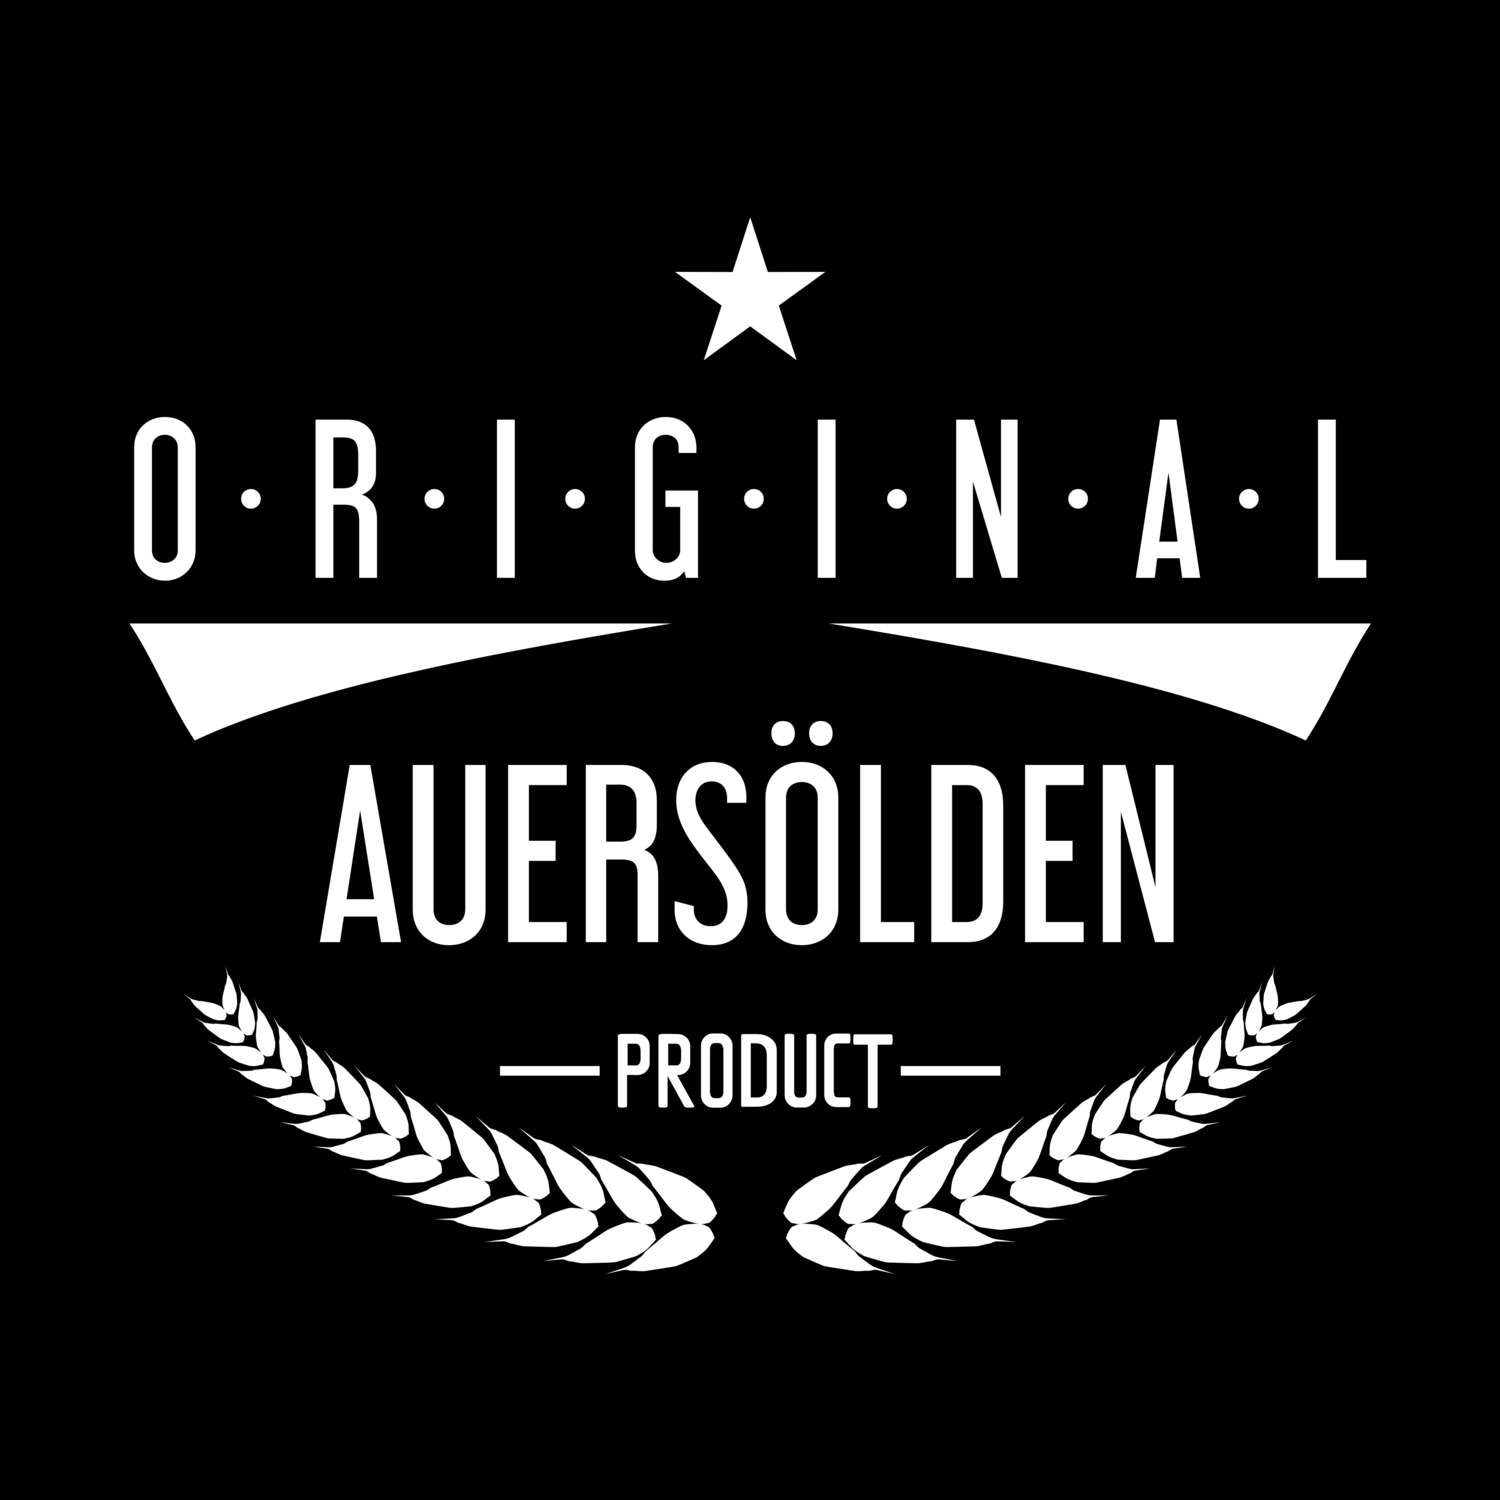 Auersölden T-Shirt »Original Product«